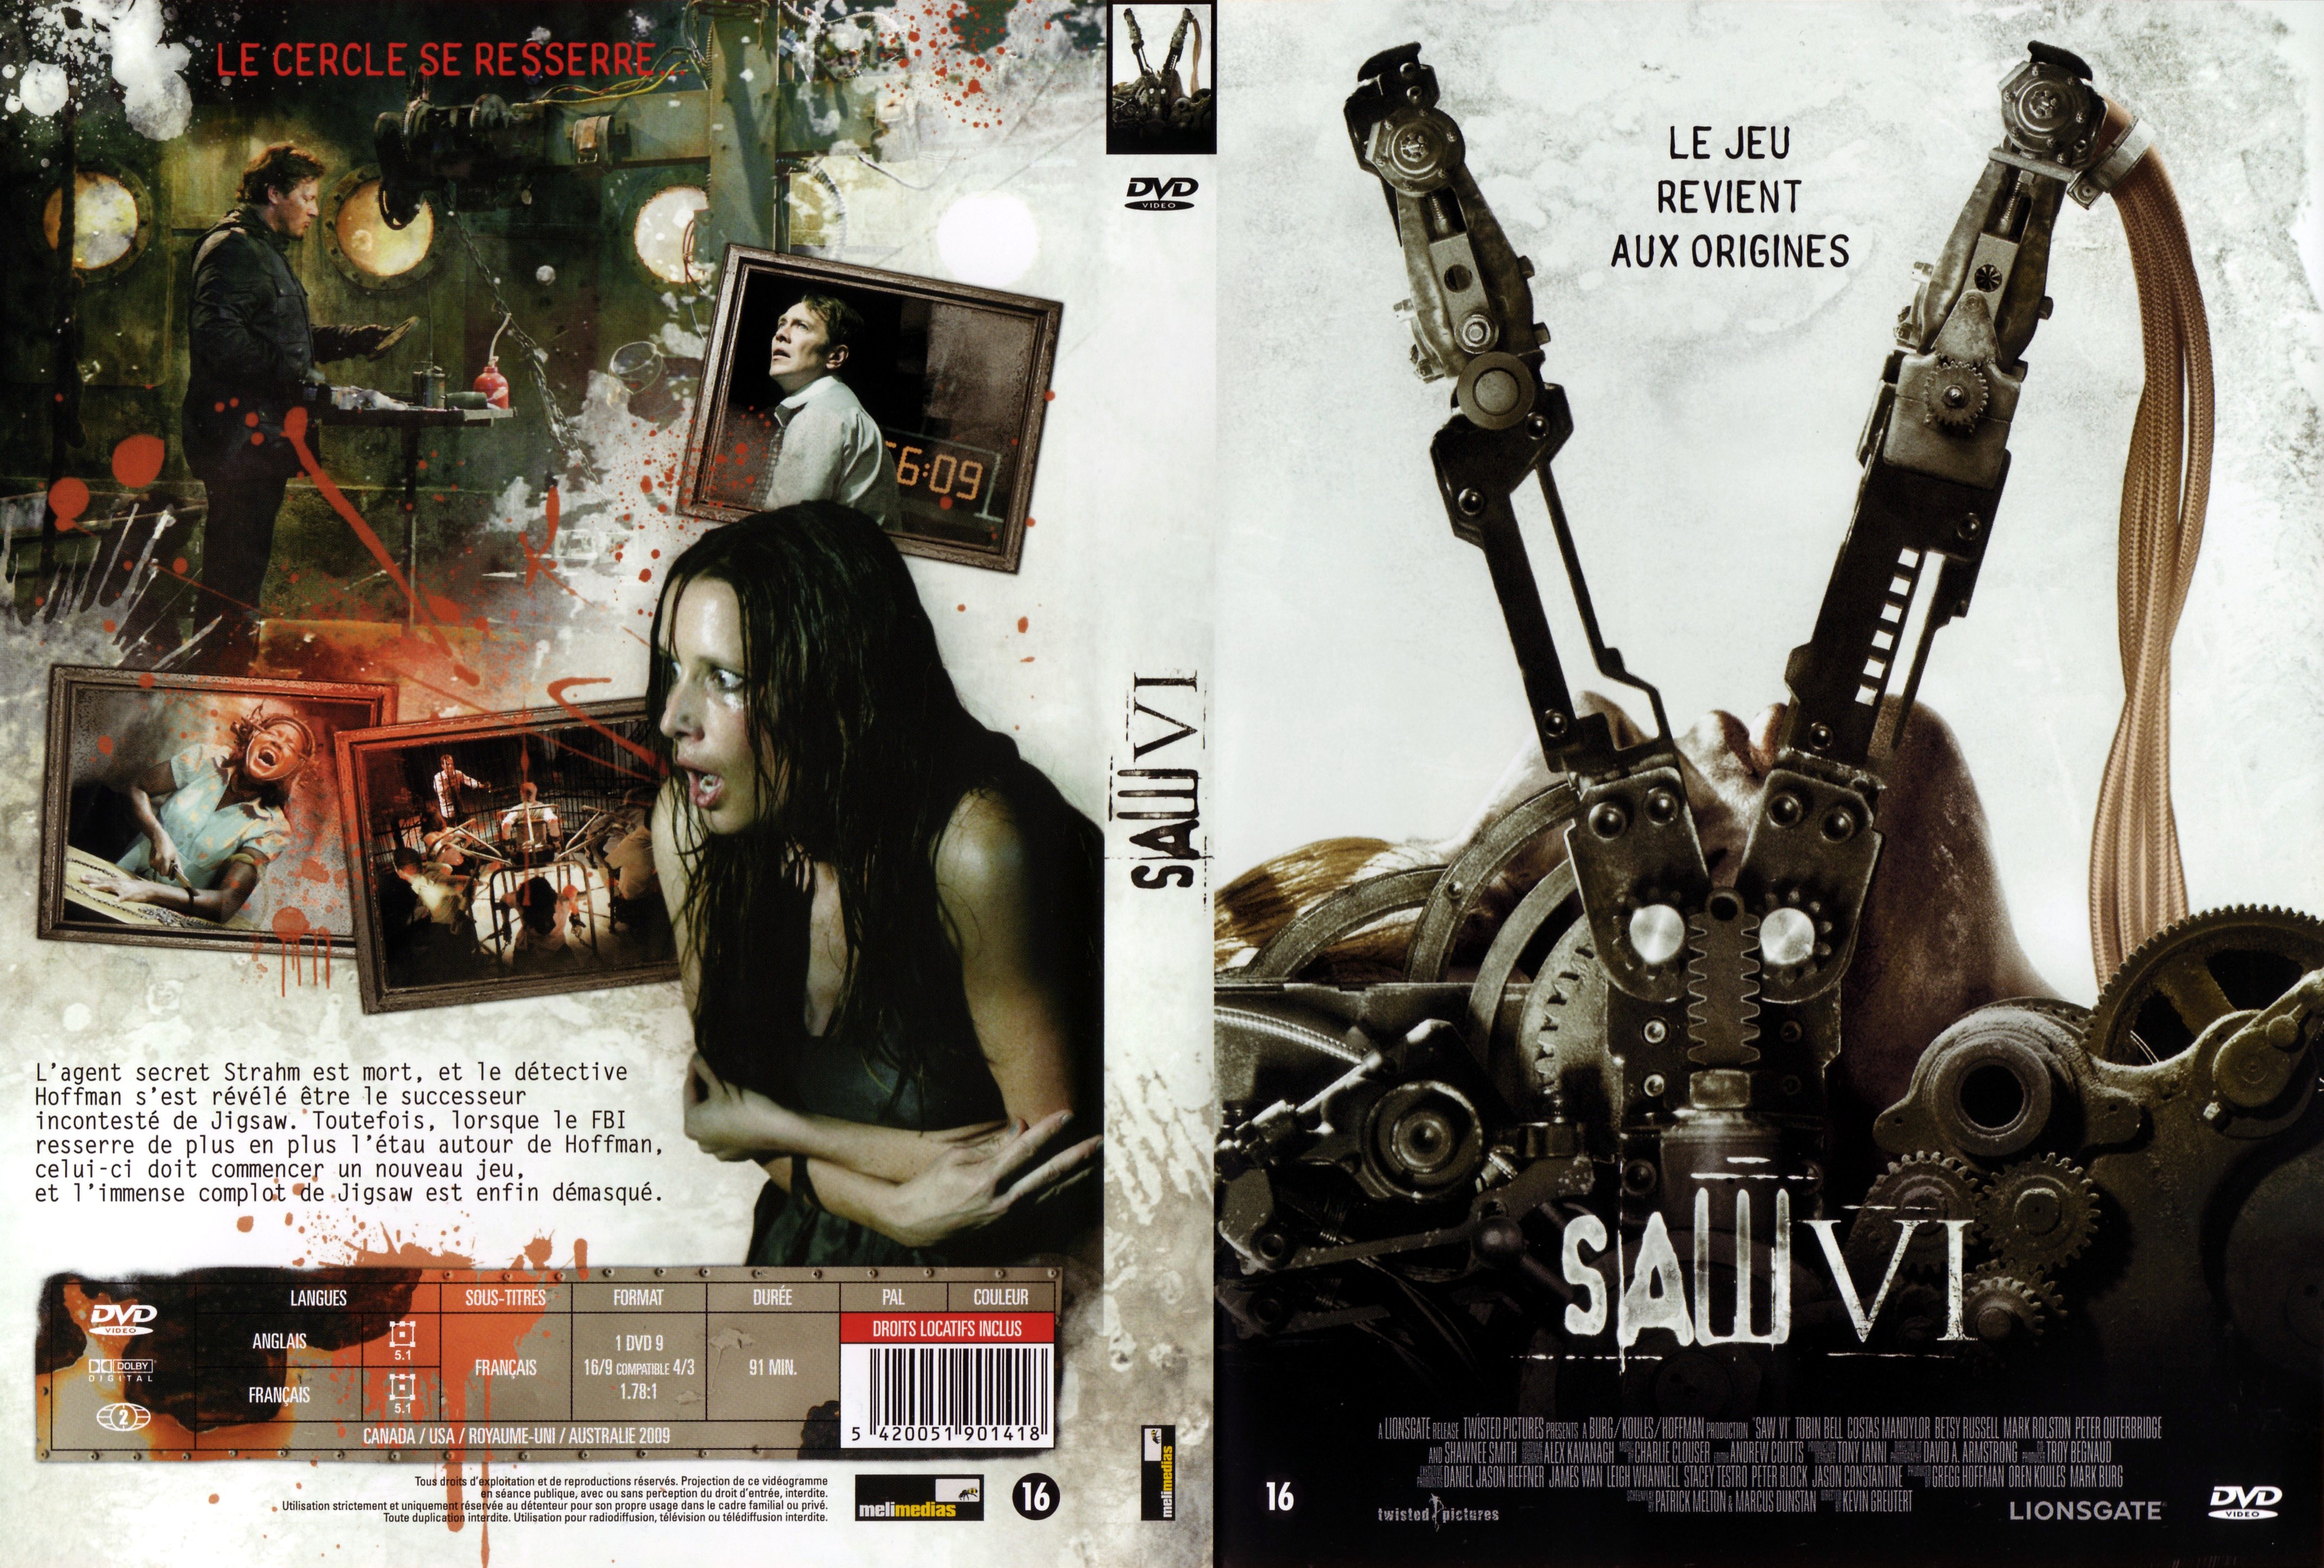 Jaquette DVD Saw 6 v2